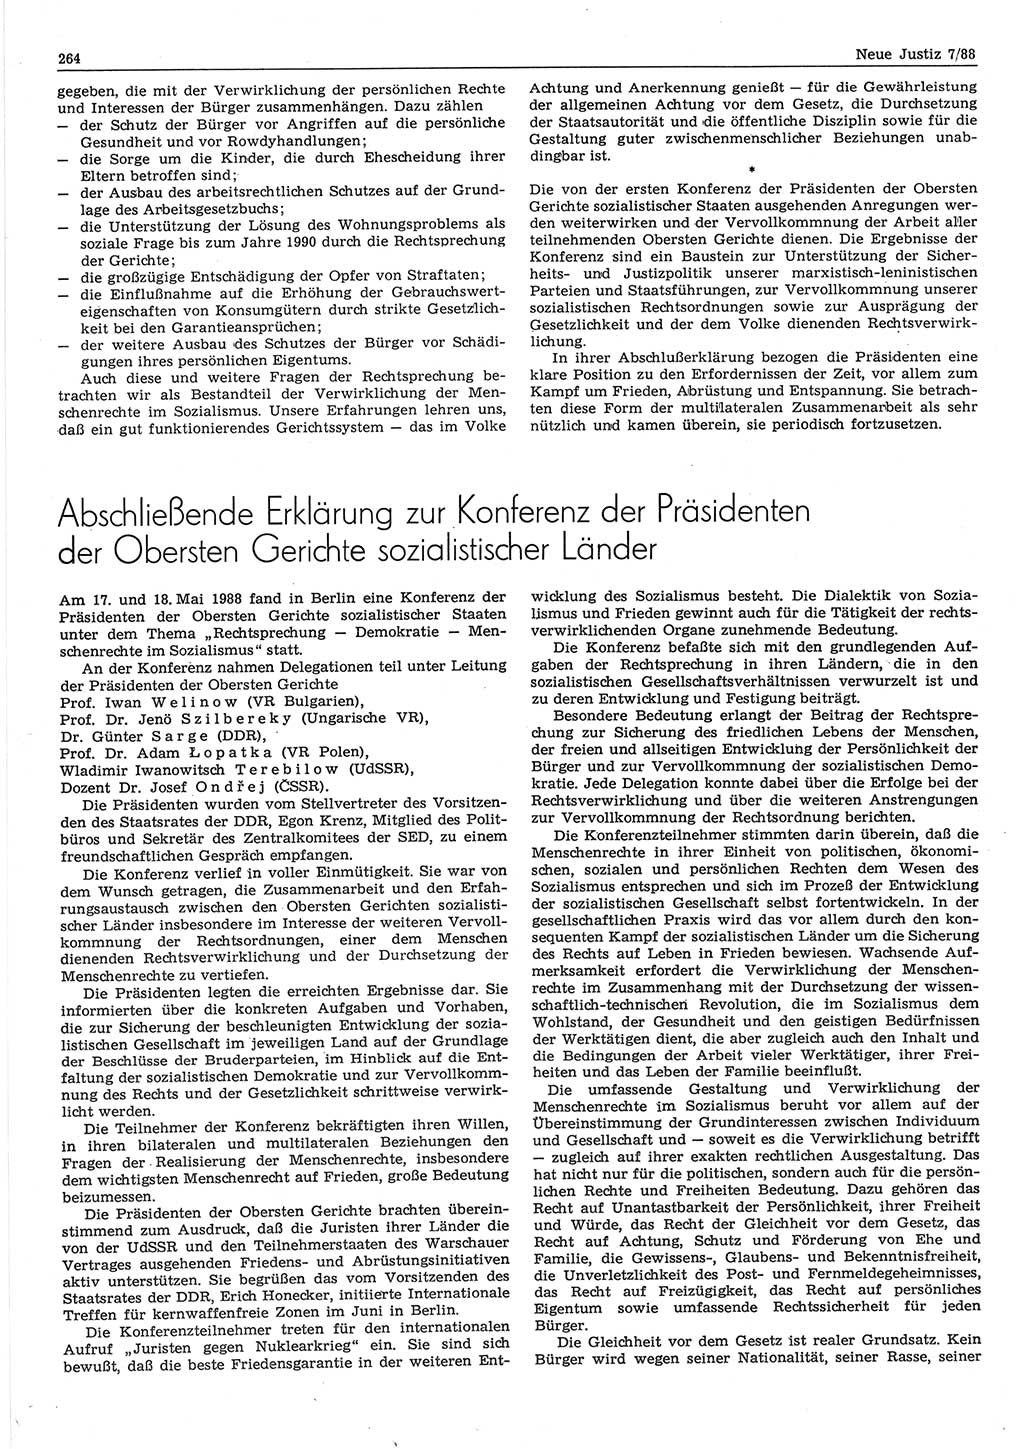 Neue Justiz (NJ), Zeitschrift für sozialistisches Recht und Gesetzlichkeit [Deutsche Demokratische Republik (DDR)], 42. Jahrgang 1988, Seite 264 (NJ DDR 1988, S. 264)